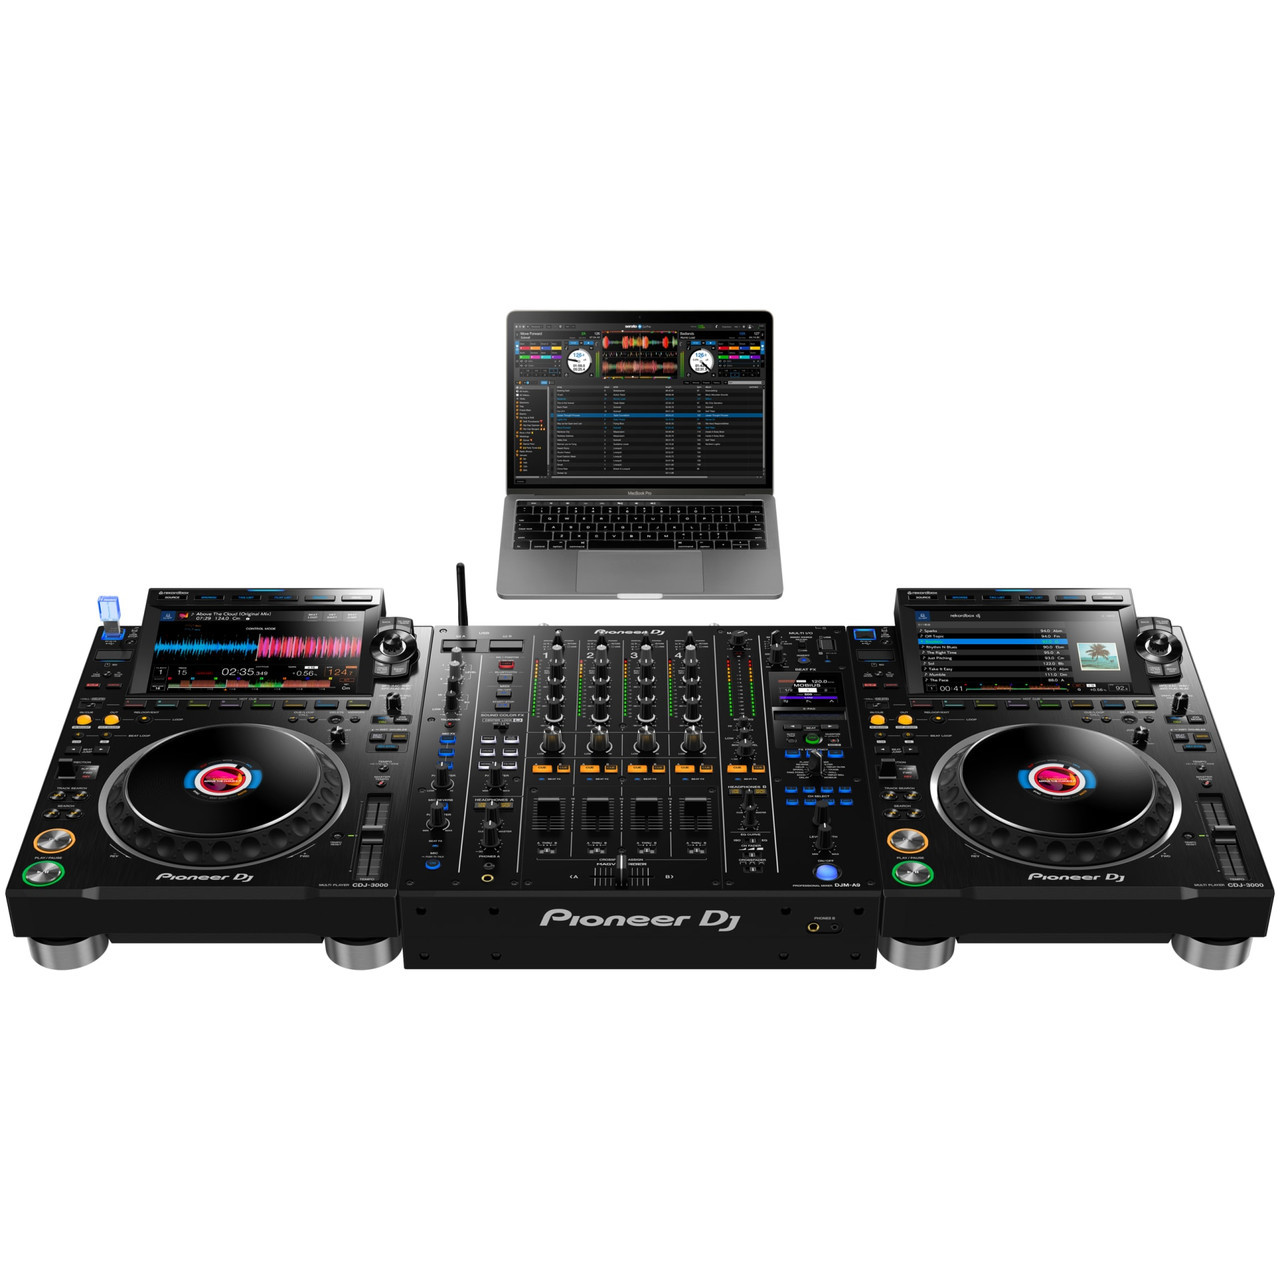 PIONEER DJ DJM-A9 4-channel professional DJ mixer (black) | EMI Audio